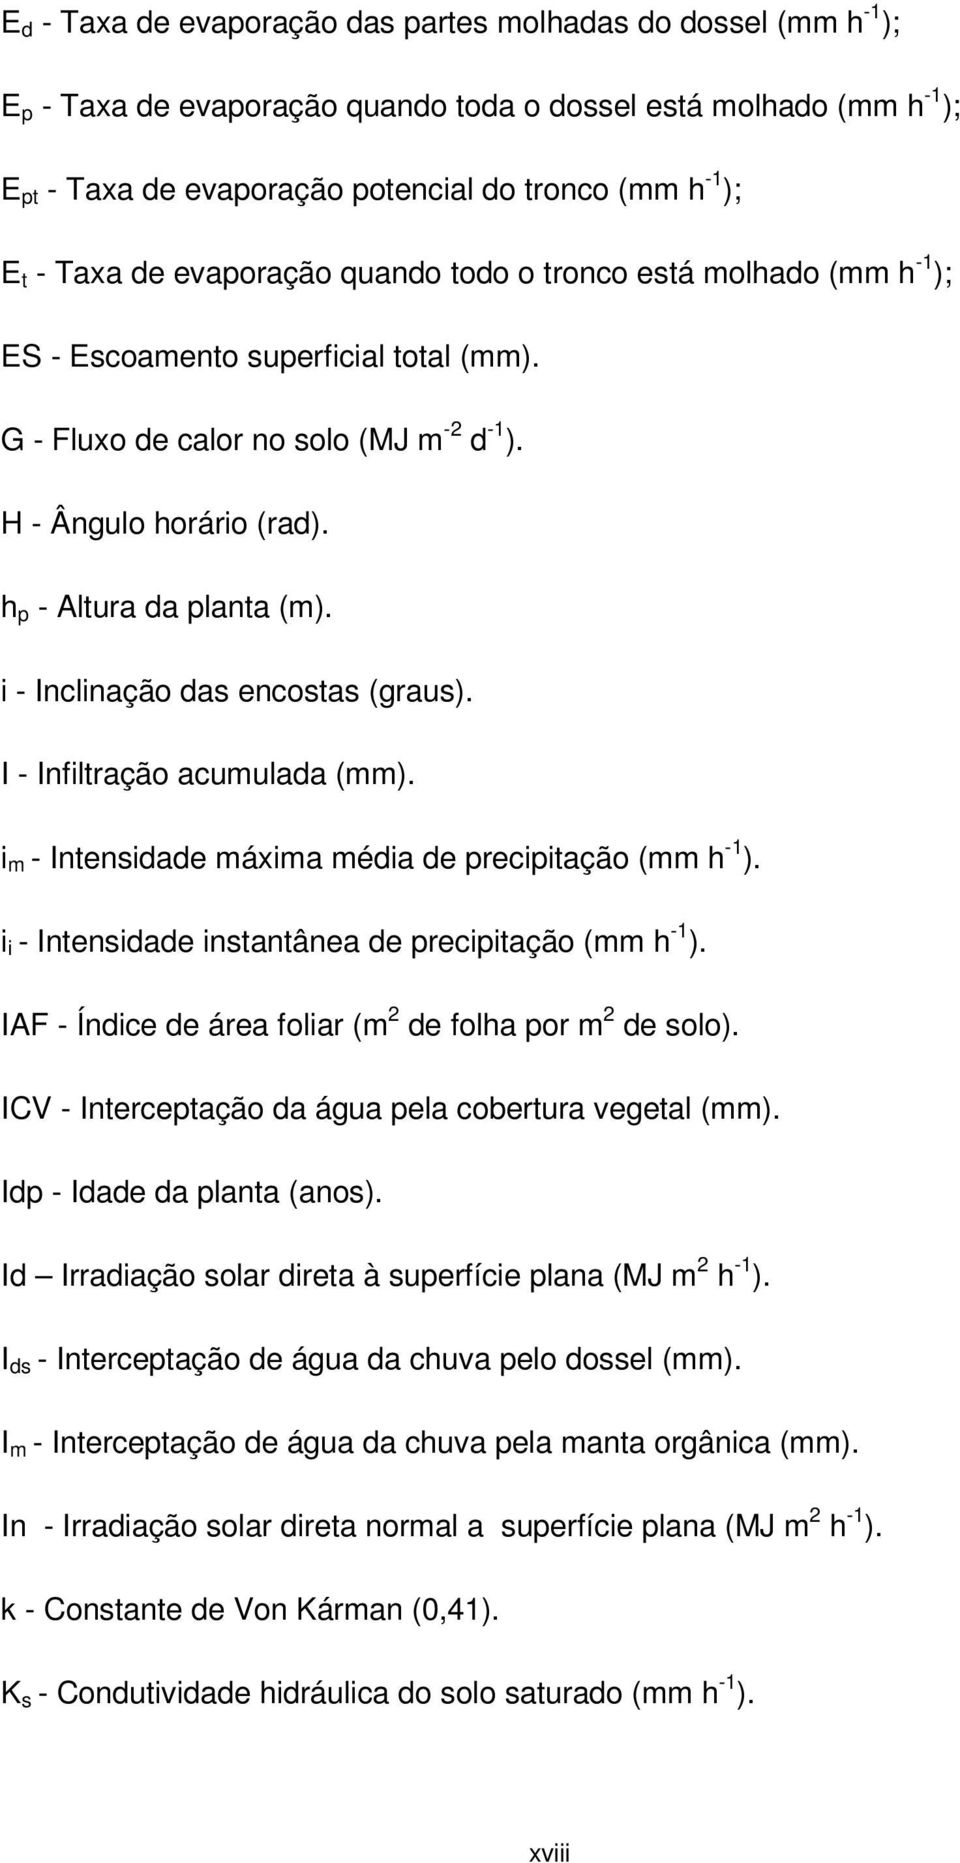 h p - Altura da planta (m). i - Inclinação das encostas (graus). I - Infiltração acumulada (mm). i m - Intensidade máxima média de precipitação (mm h -1 ).